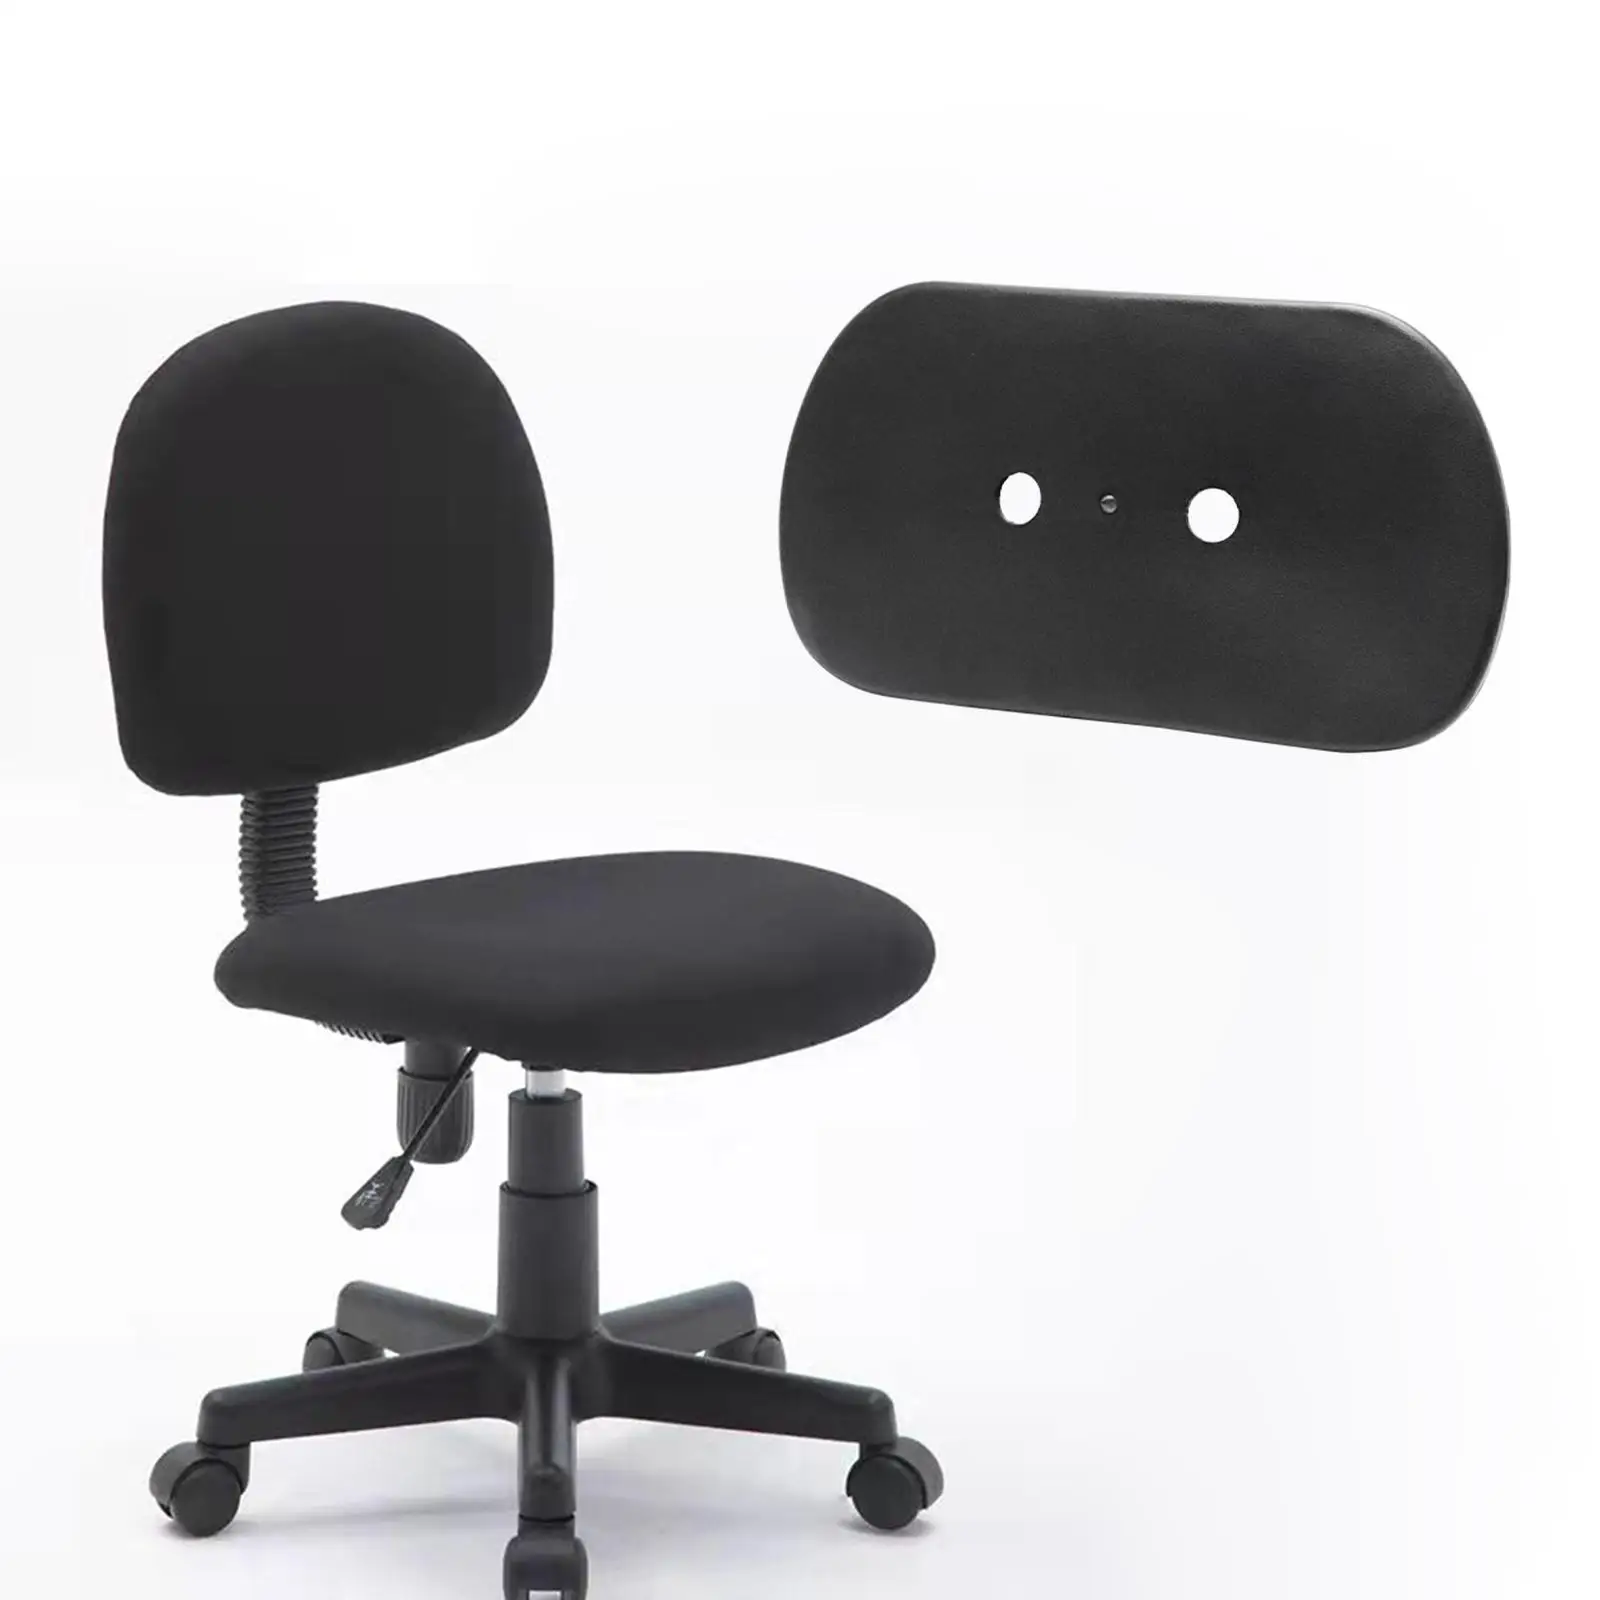 Dossier de chaise de bureau confortable, remplacement, noir, accessoire de meubles, installation facile, support dorsal pour chaise de bureau